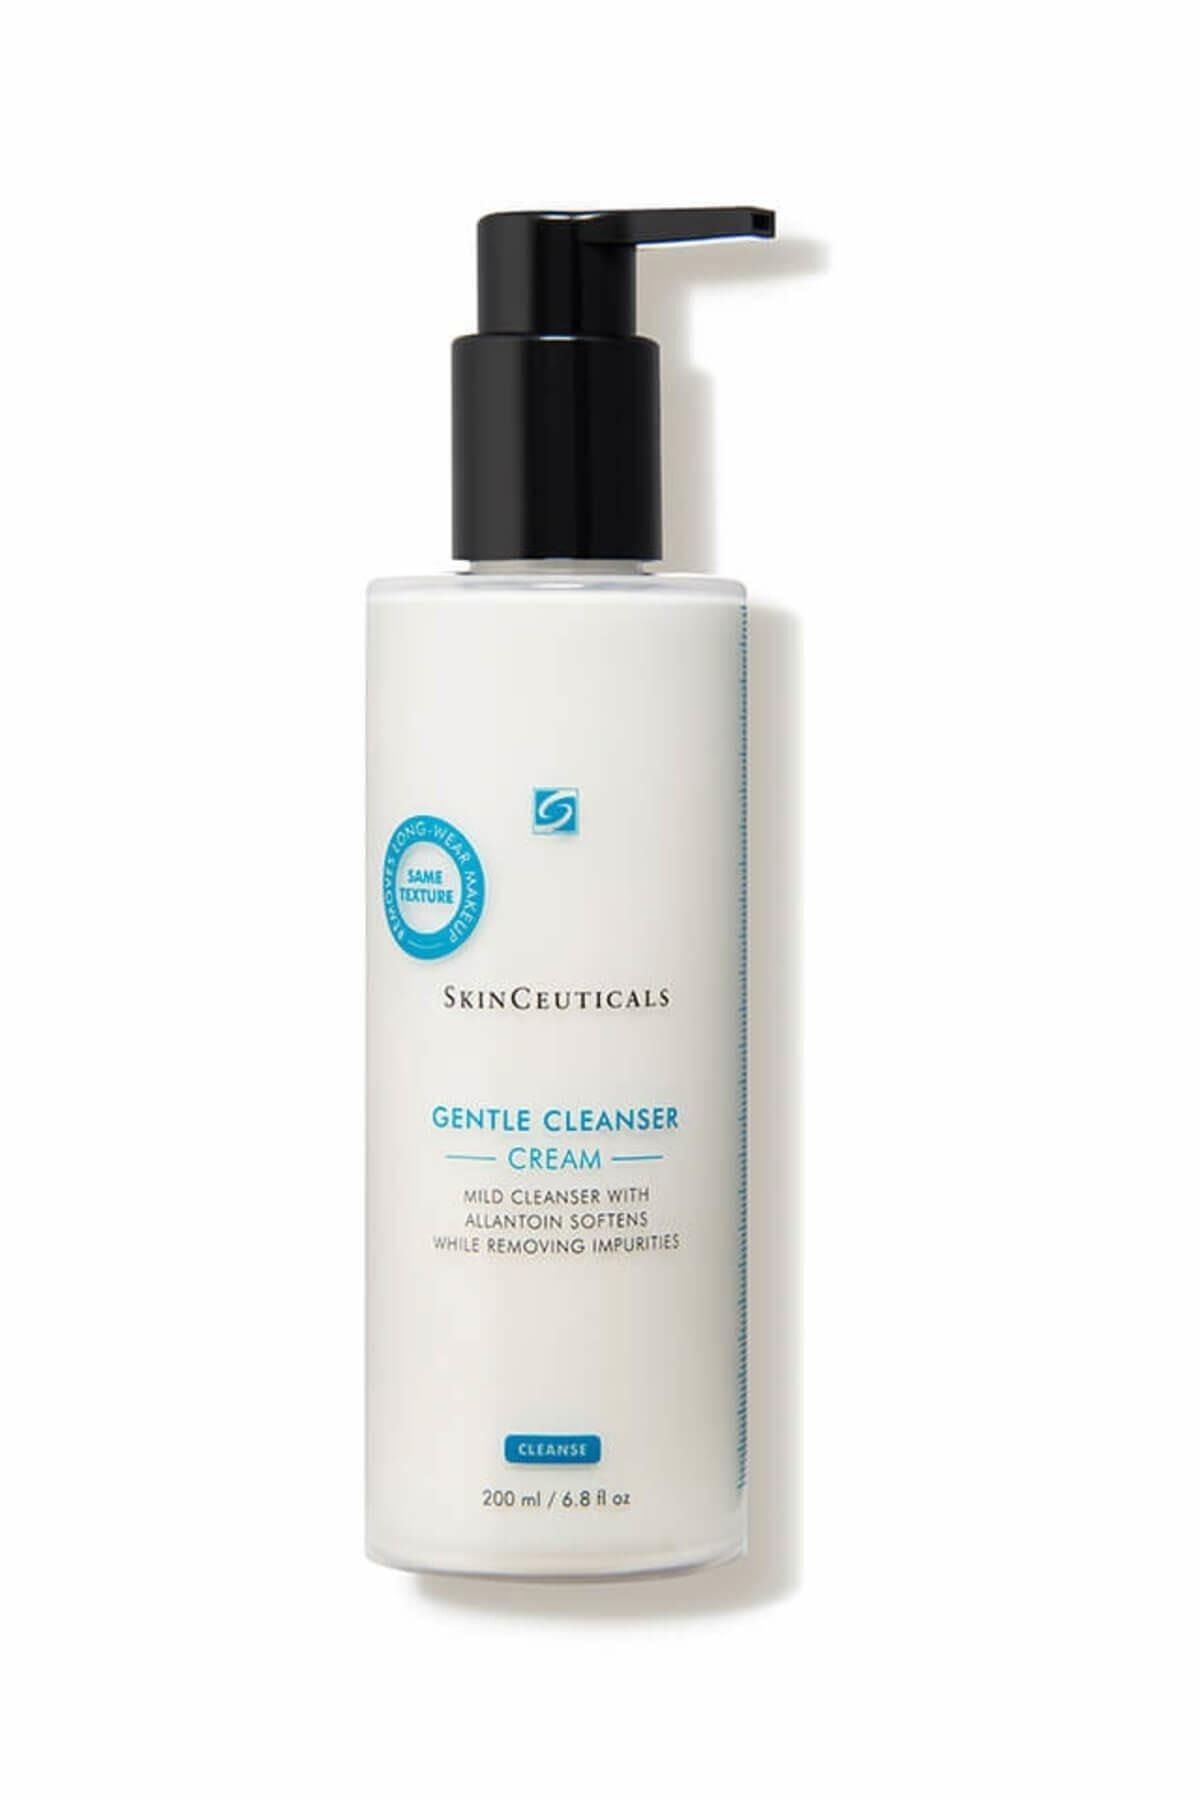 Skinceuticals Gentle Effective Moisturizing Cleanser Cream 200ml DKÜRN418